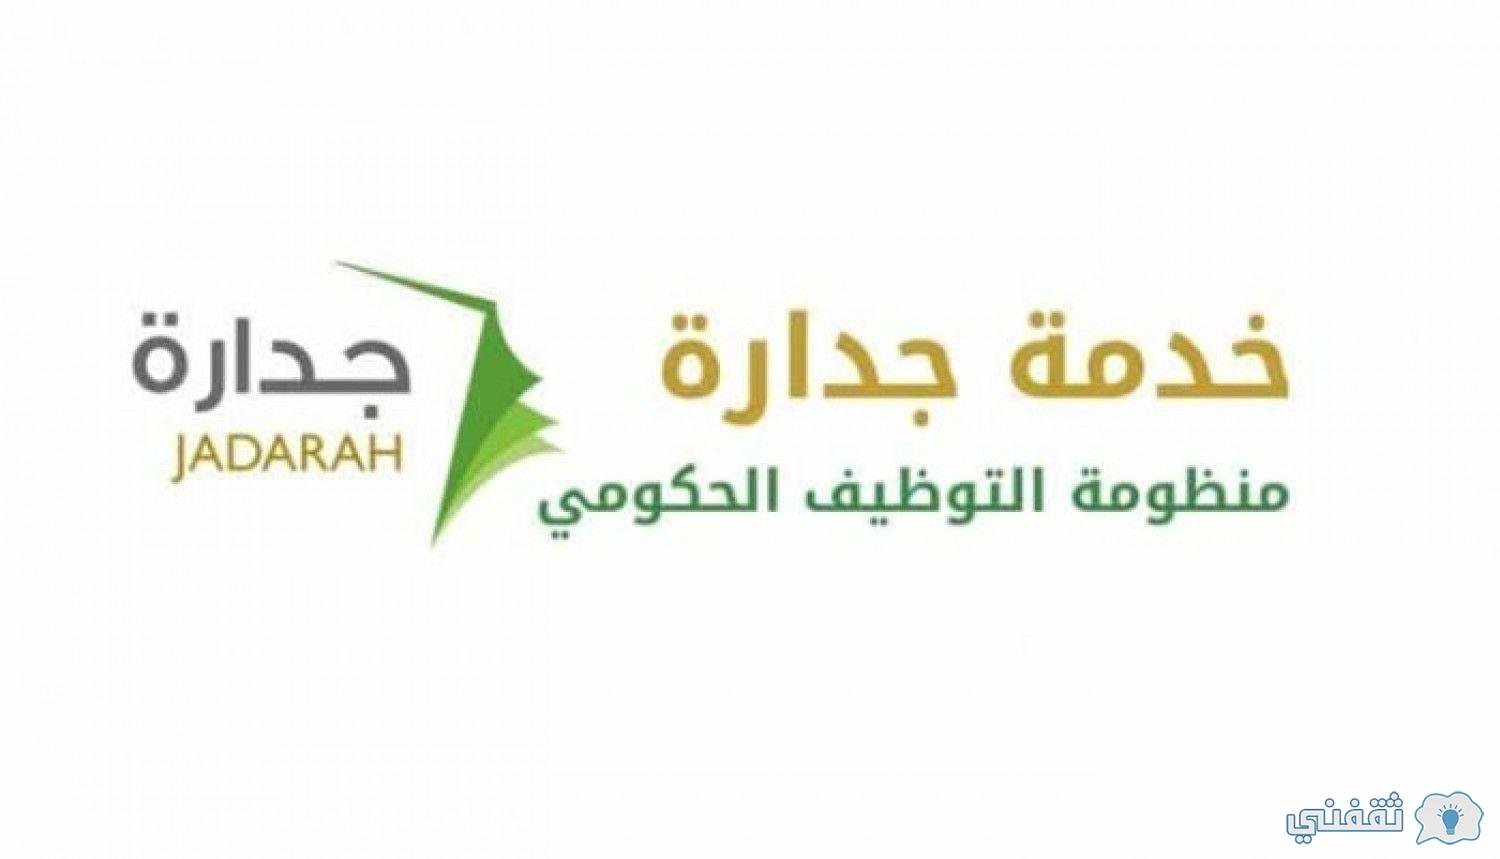 طريقة التسجيل في وظائف جدارة الخدمة المدنية 1442 عبر موقع Jadarah بالسعودية